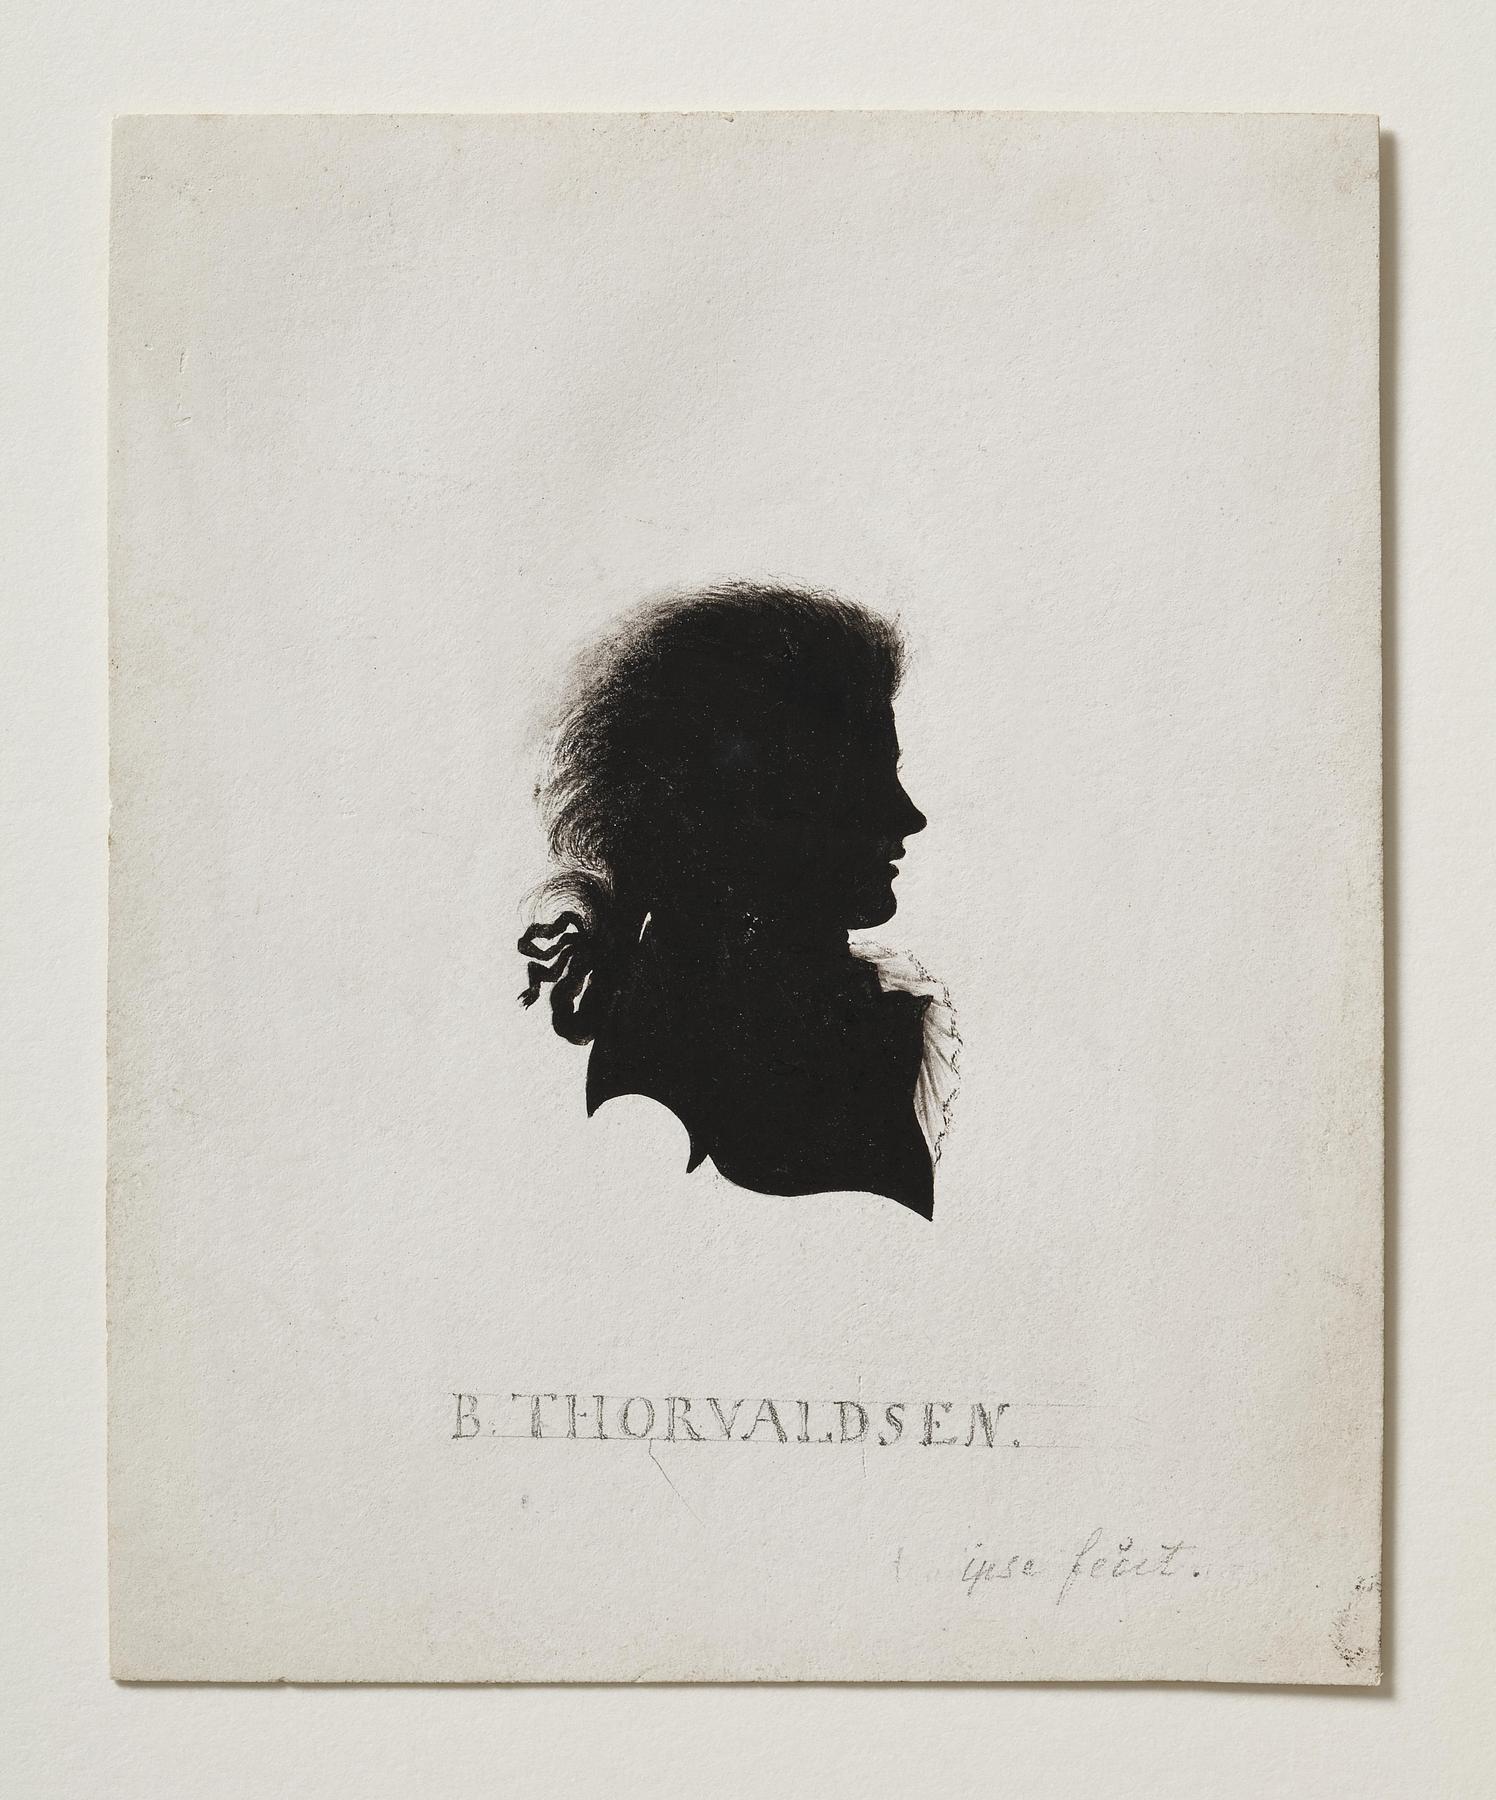 Self-portrait in silhouette, C758